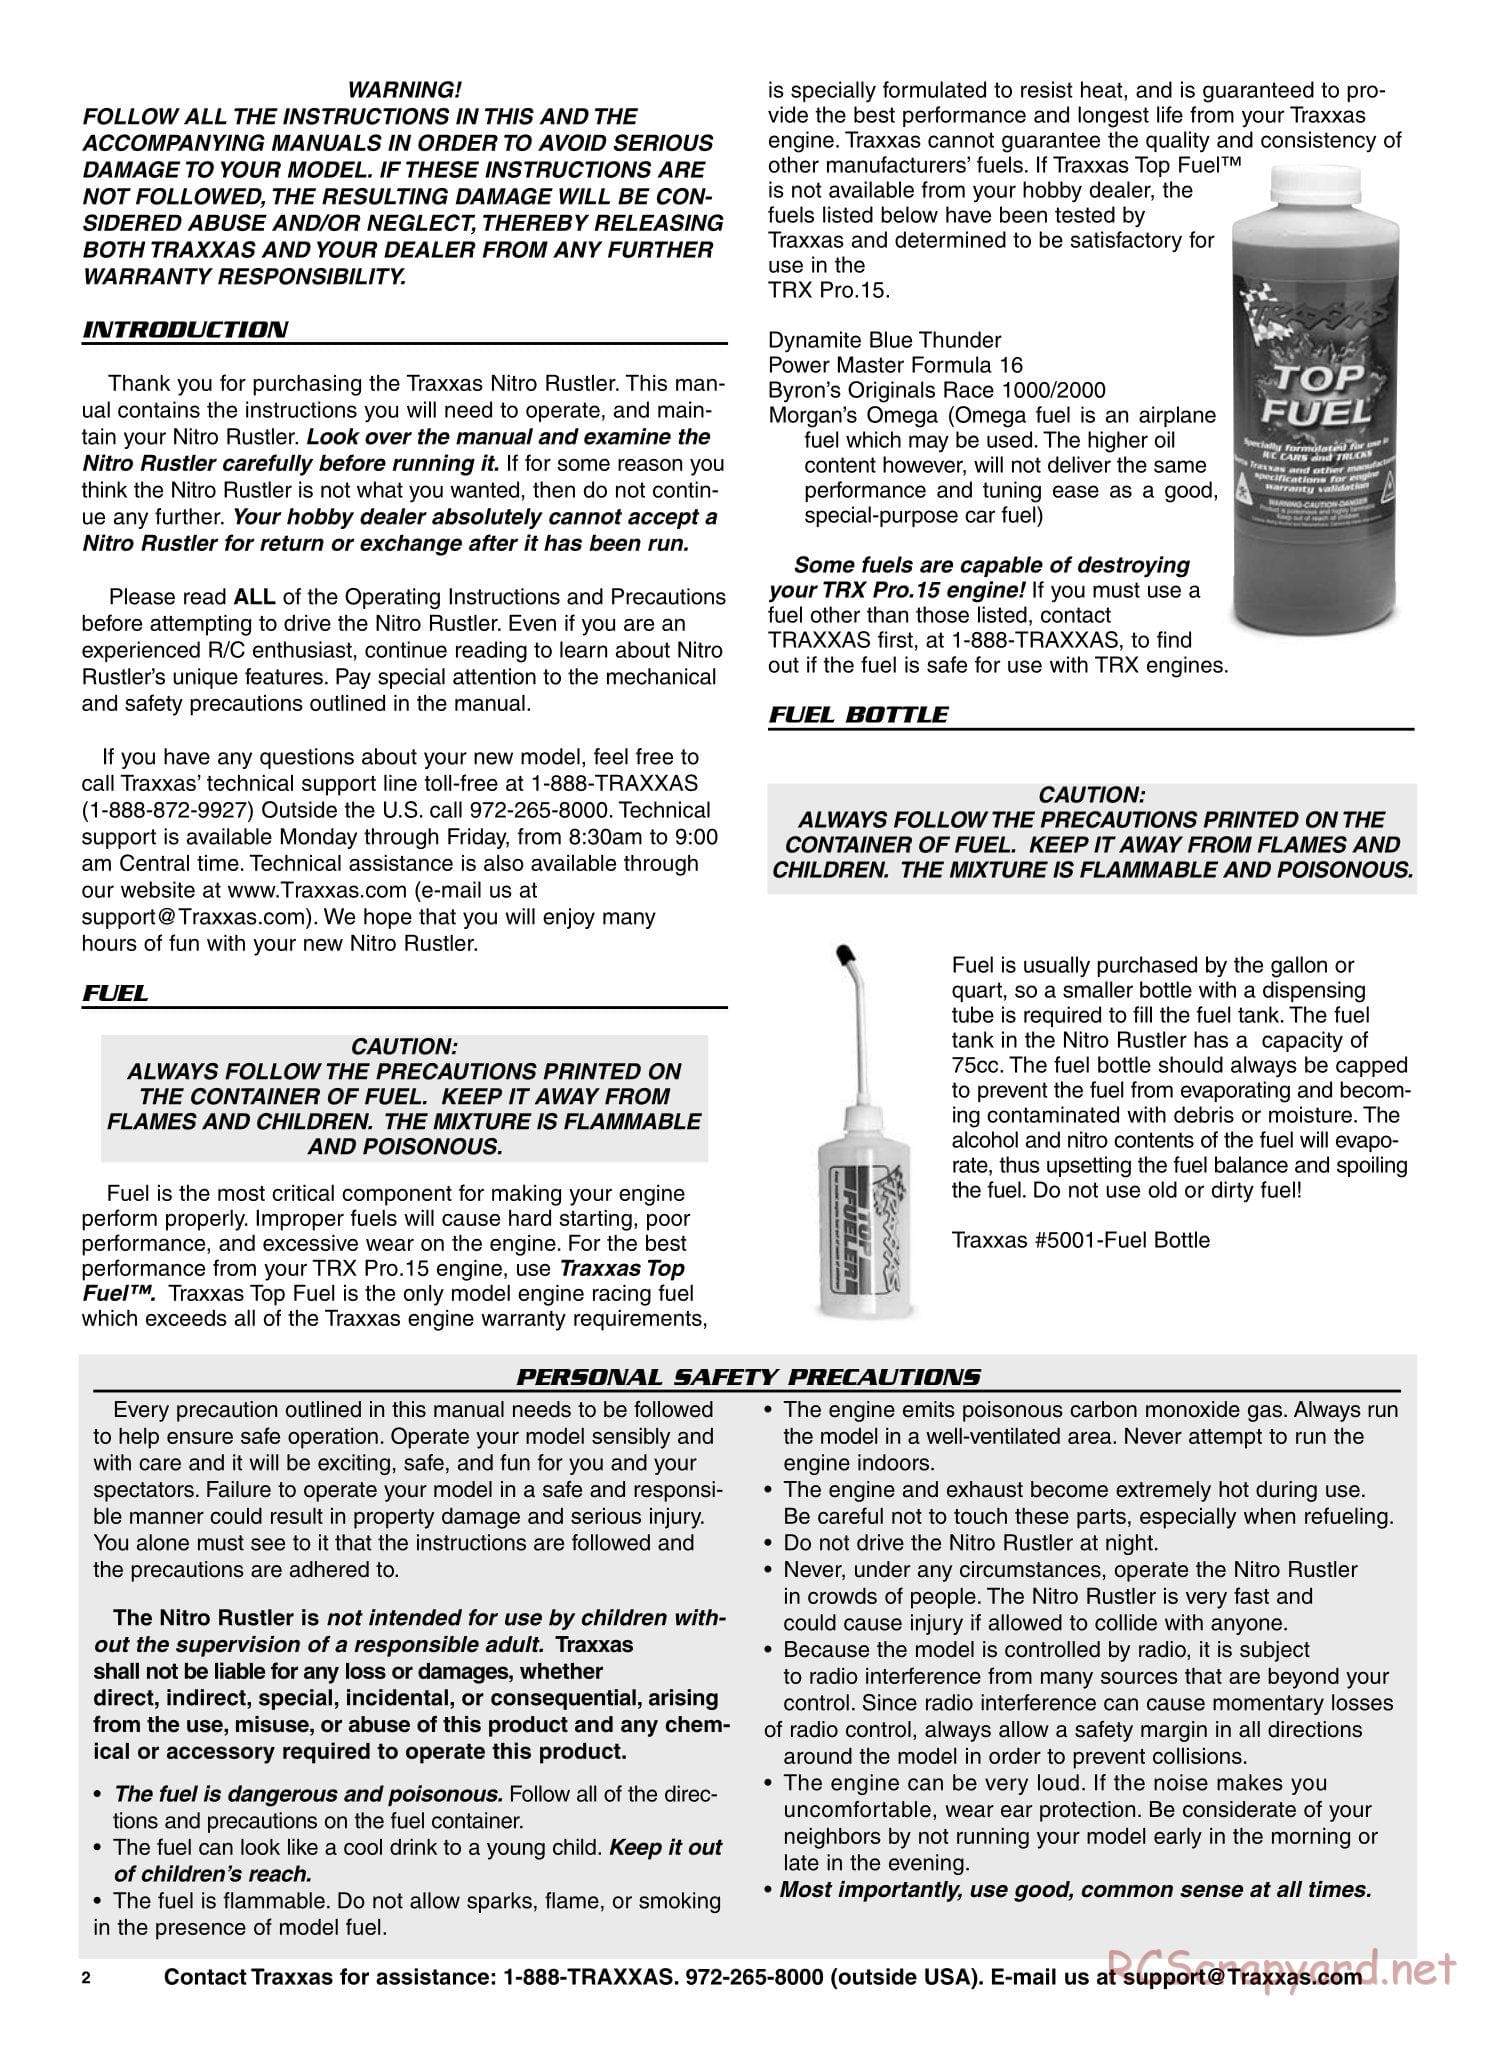 Traxxas - Nitro Rustler - Manual - Page 2